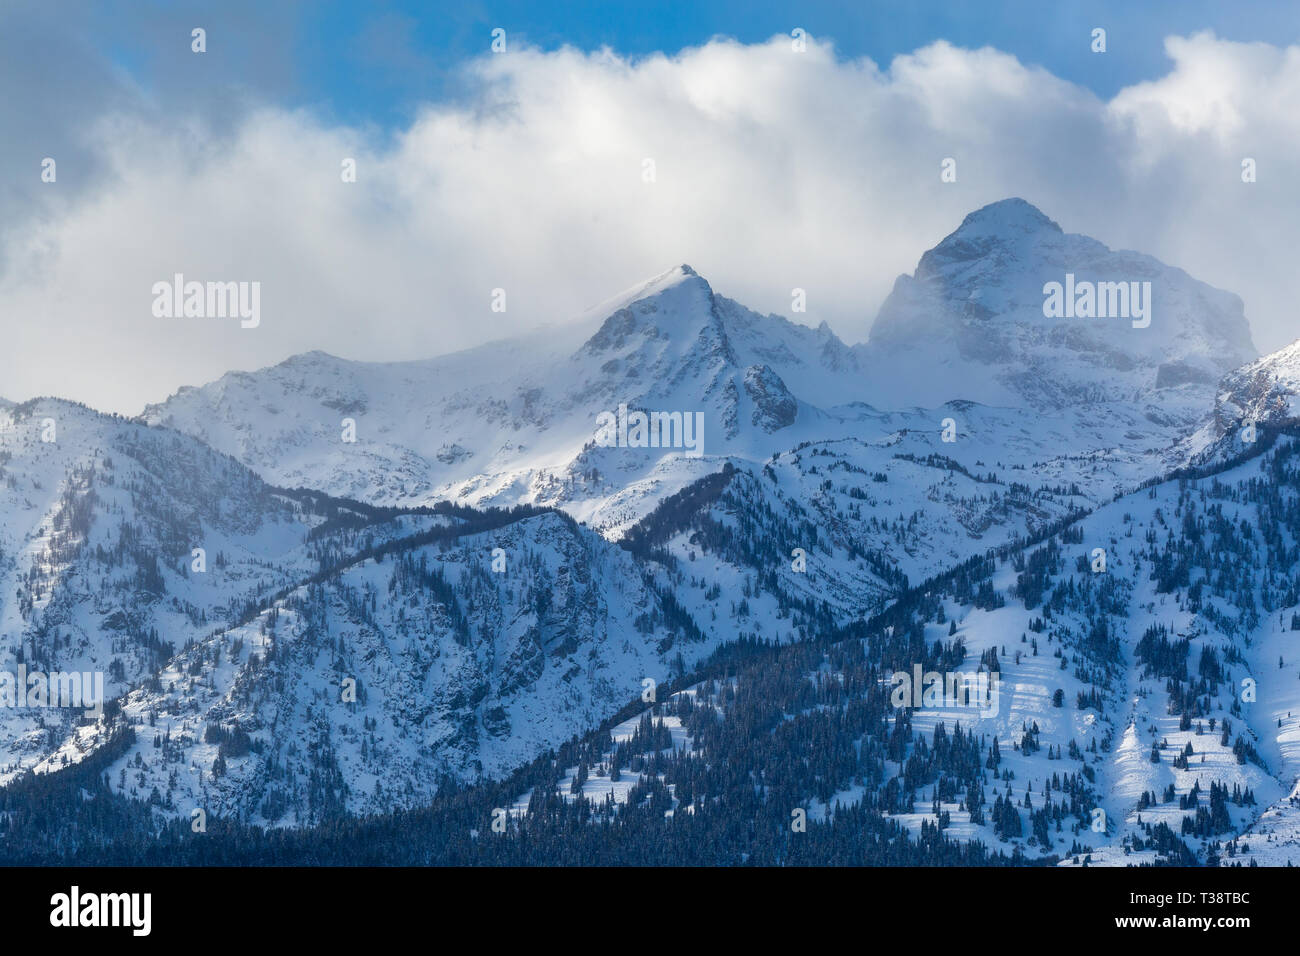 Buck Mountain Peak statique et sortant de nuages au-dessus de l'hiver de compensation Teton Mountains. Parc National de Grand Teton, Wyoming Banque D'Images